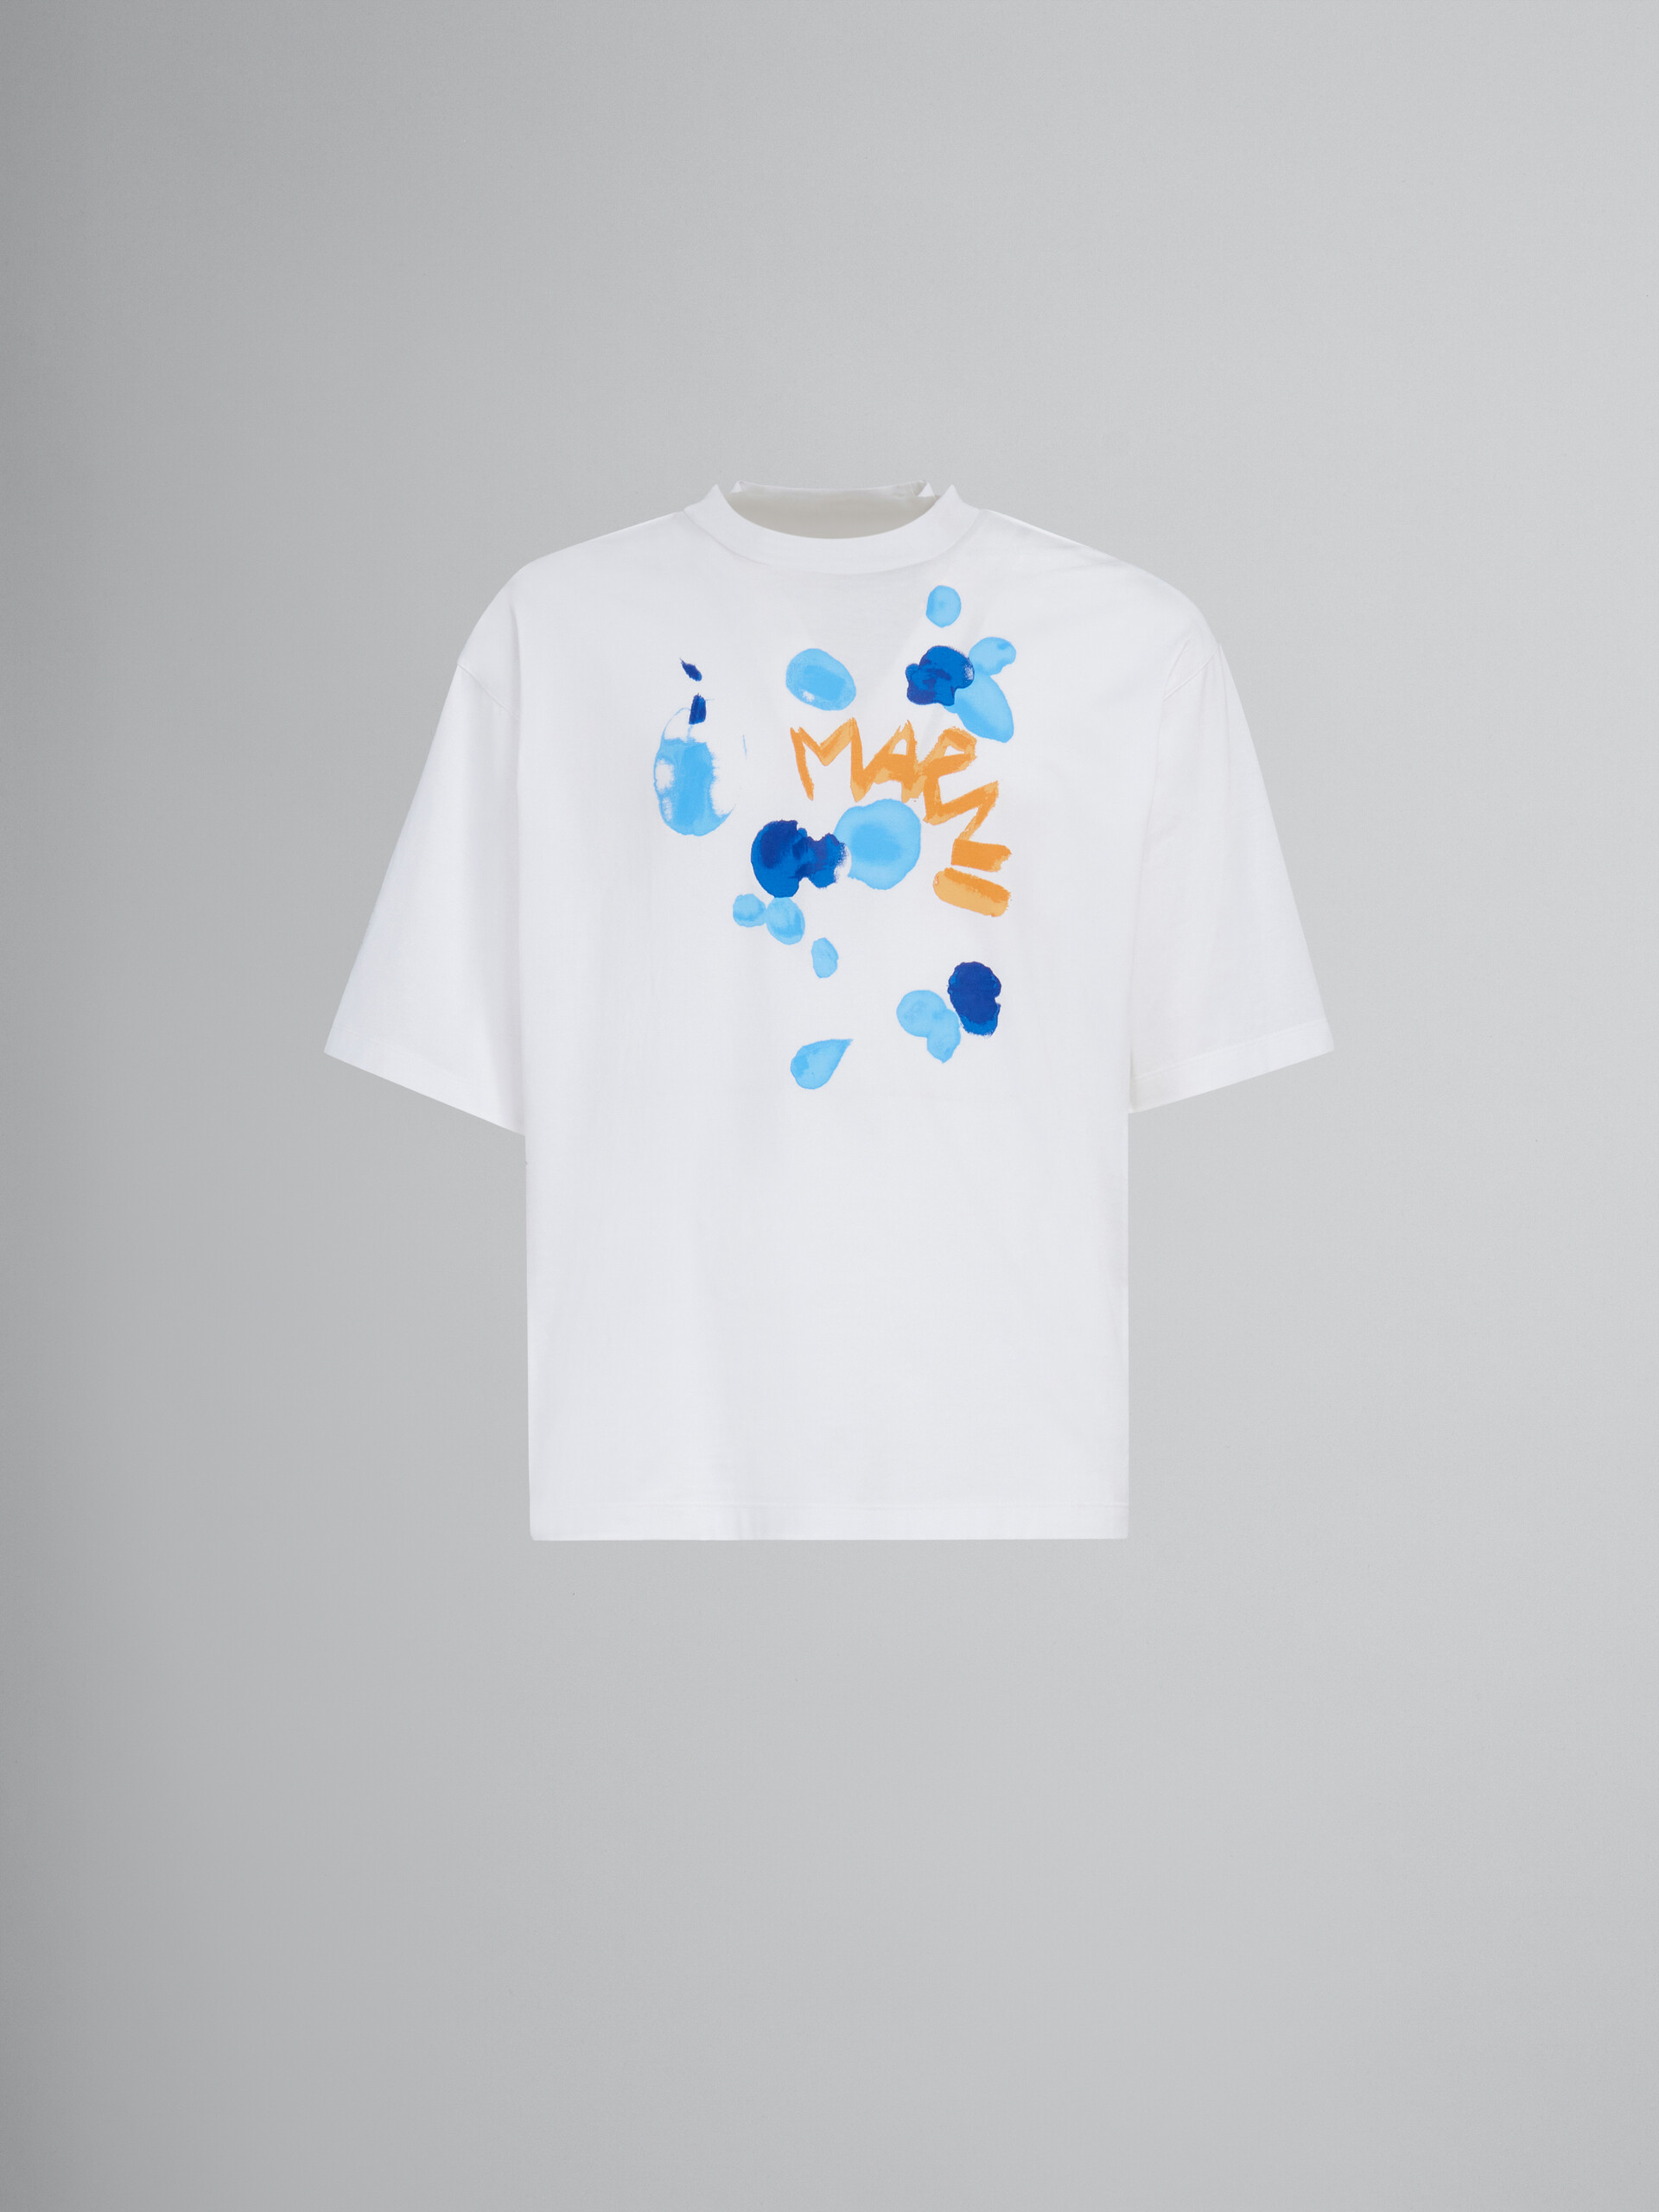 Weißes T-Shirt aus Bio-Baumwolle mit Marni Dripping-Print - T-shirts - Image 1